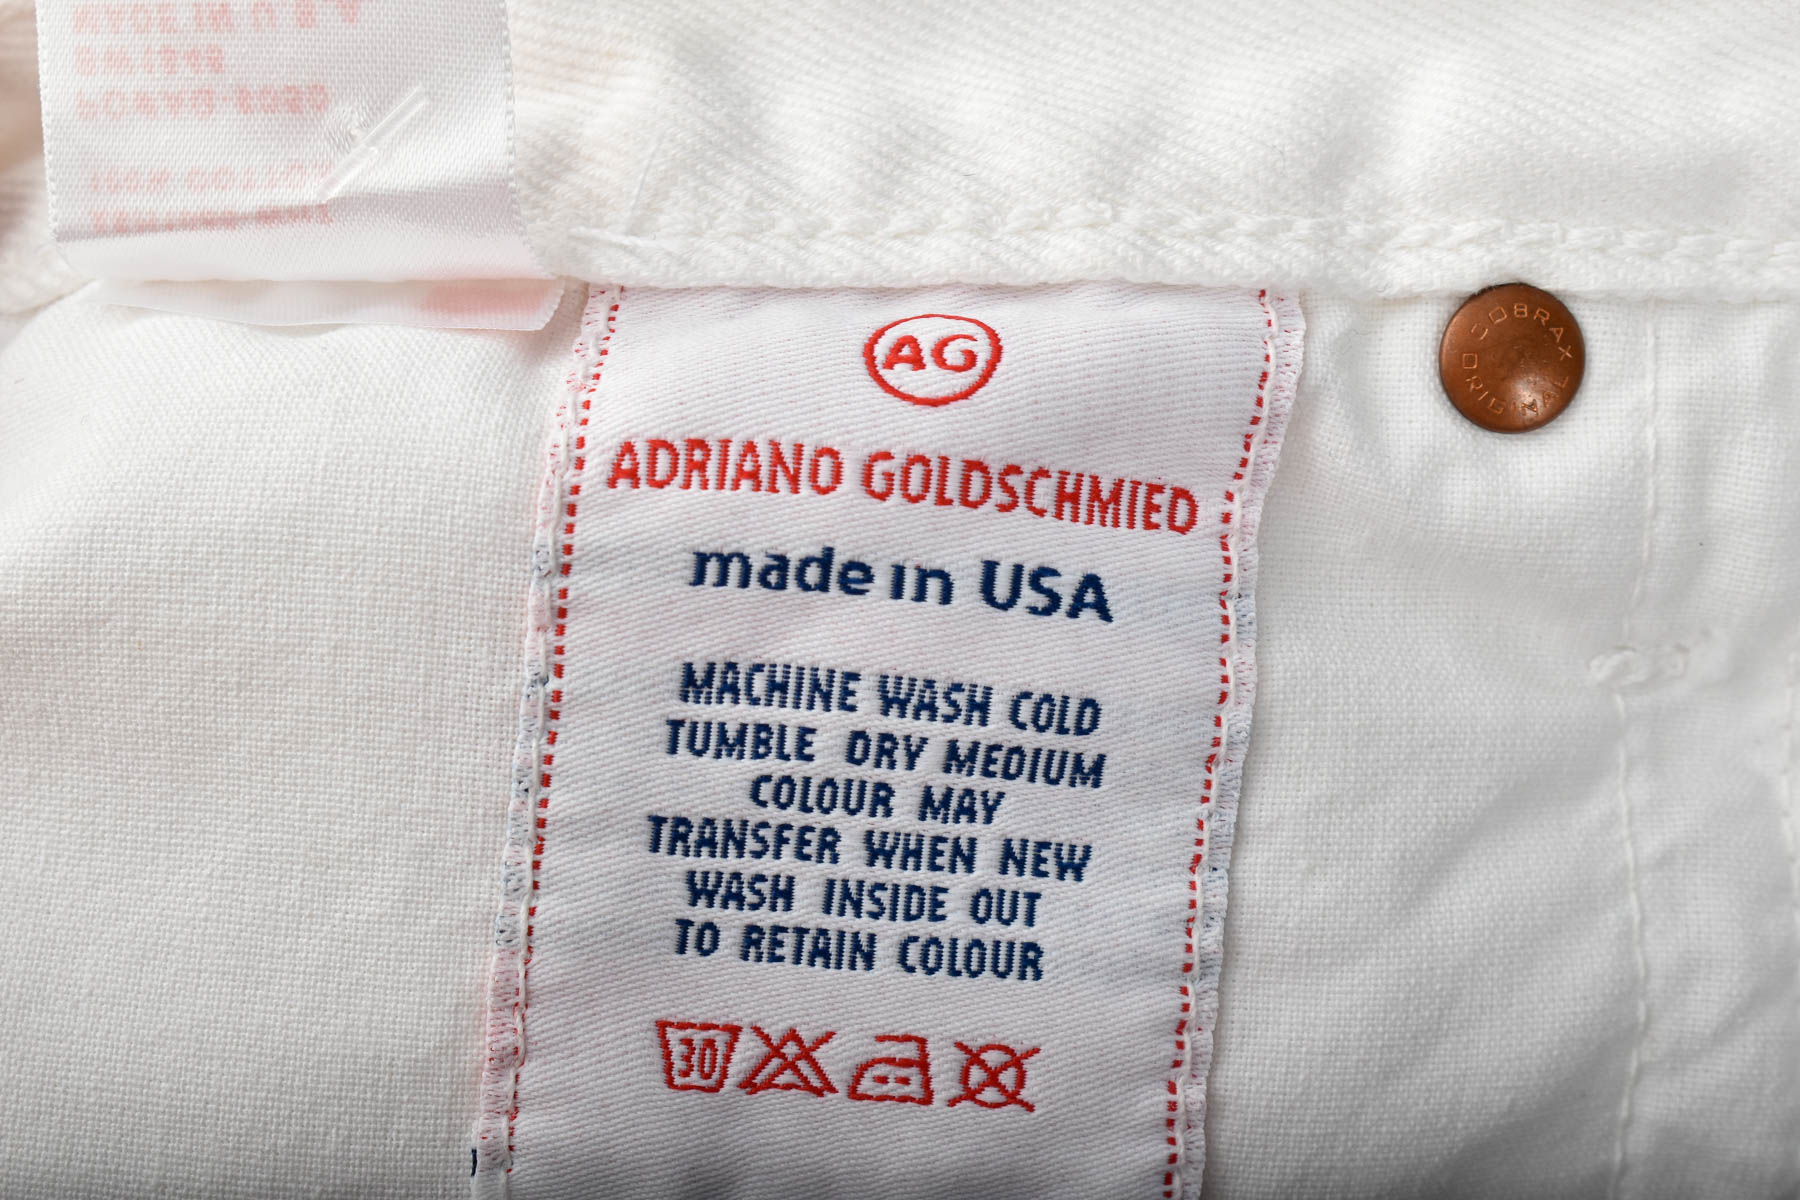 Women's jeans - Adriano Goldschmied - 2